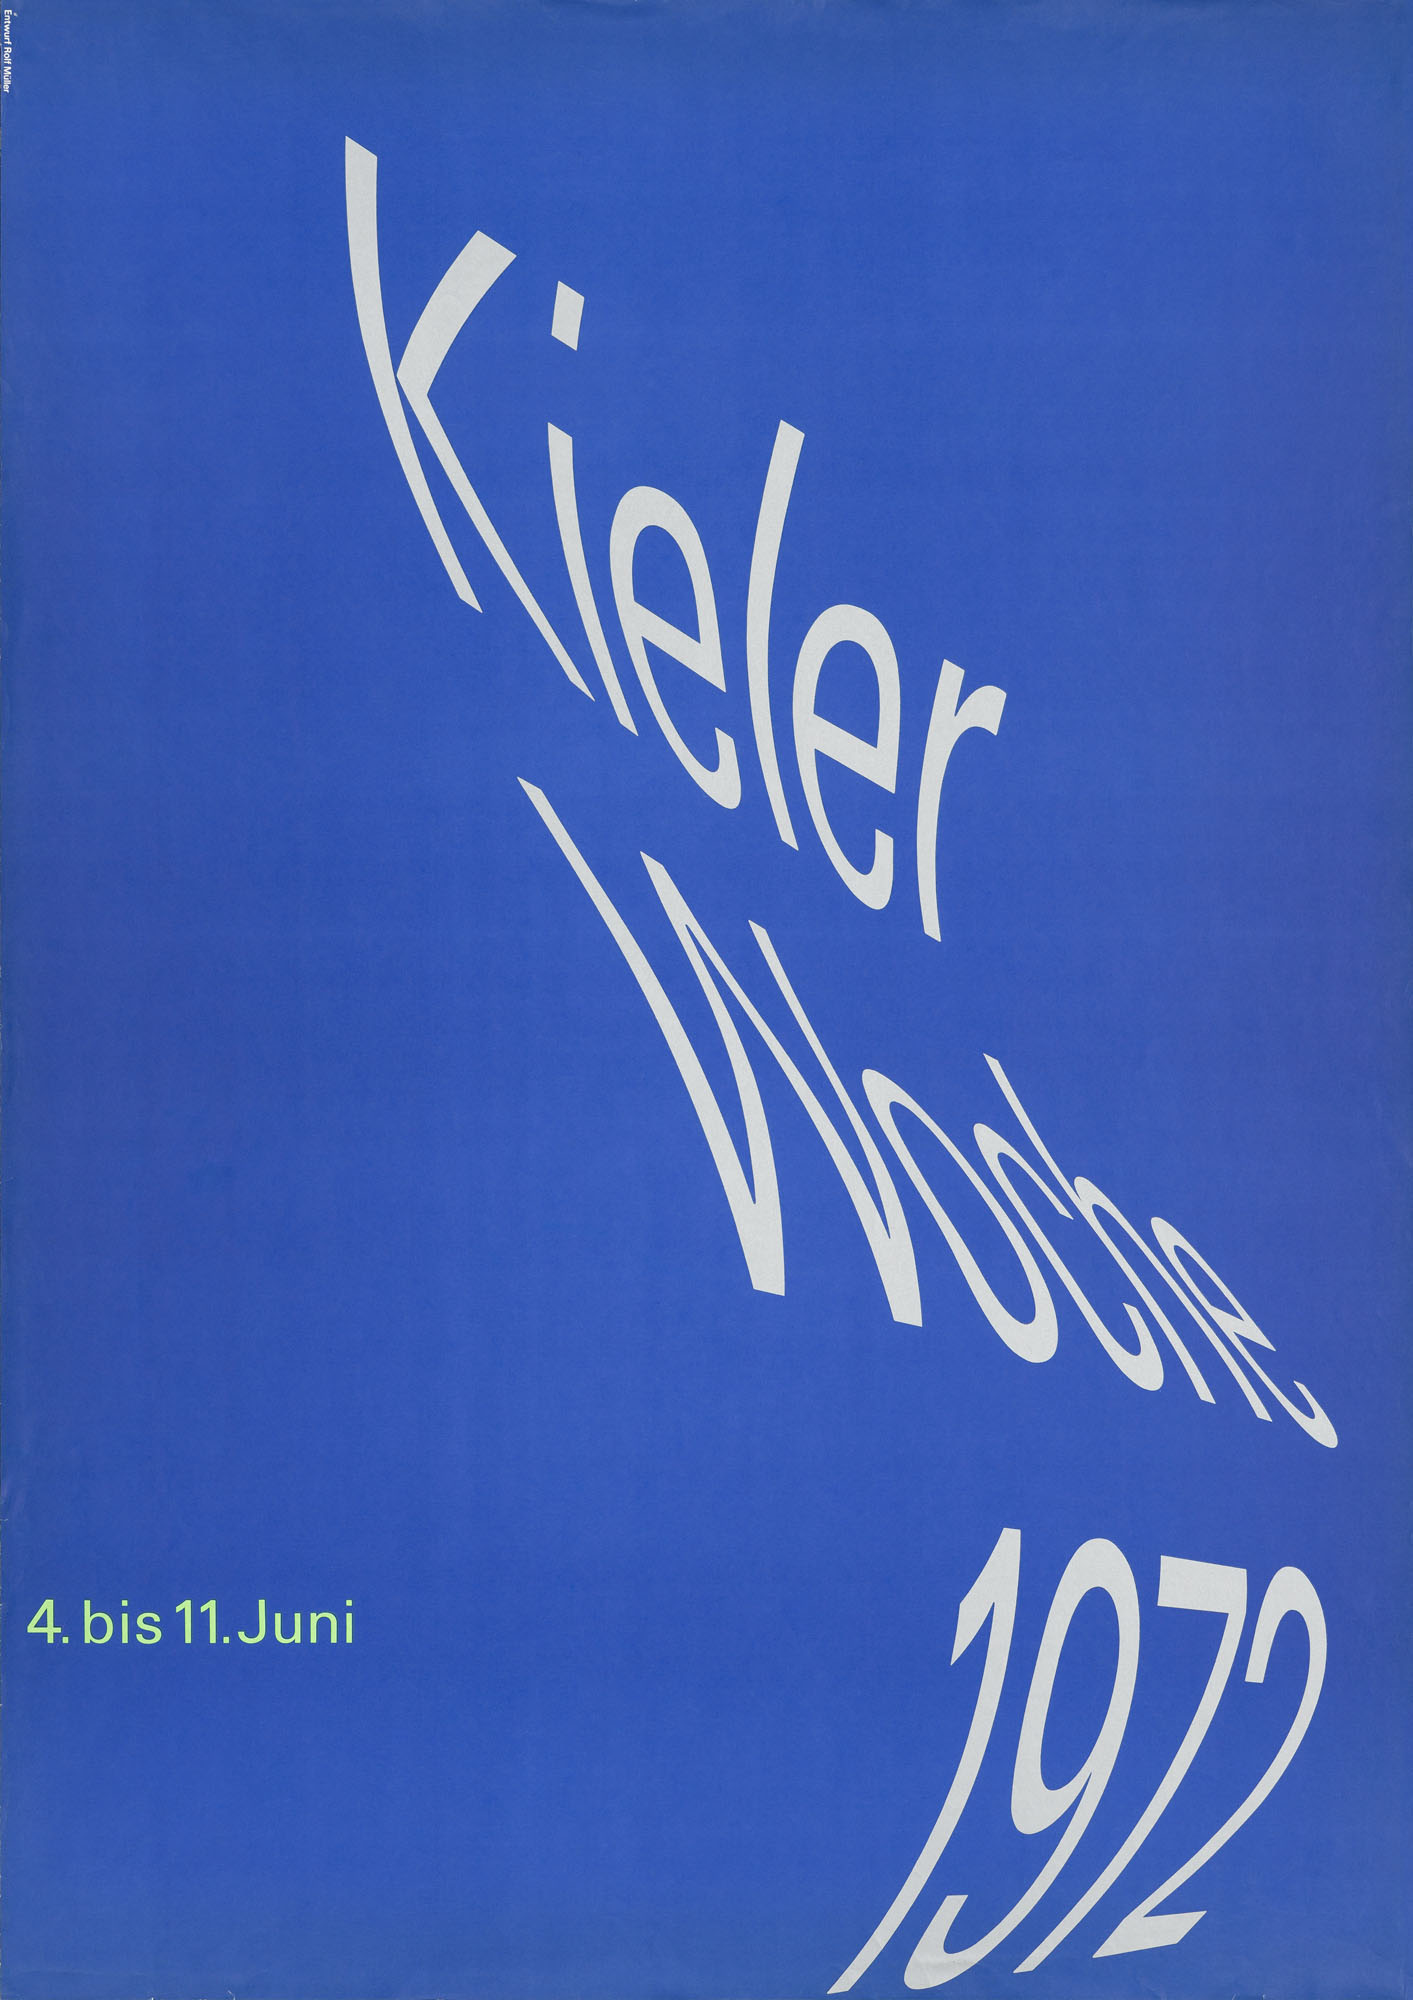 Kieler Woche Isolde Monson-Baumgart Poster